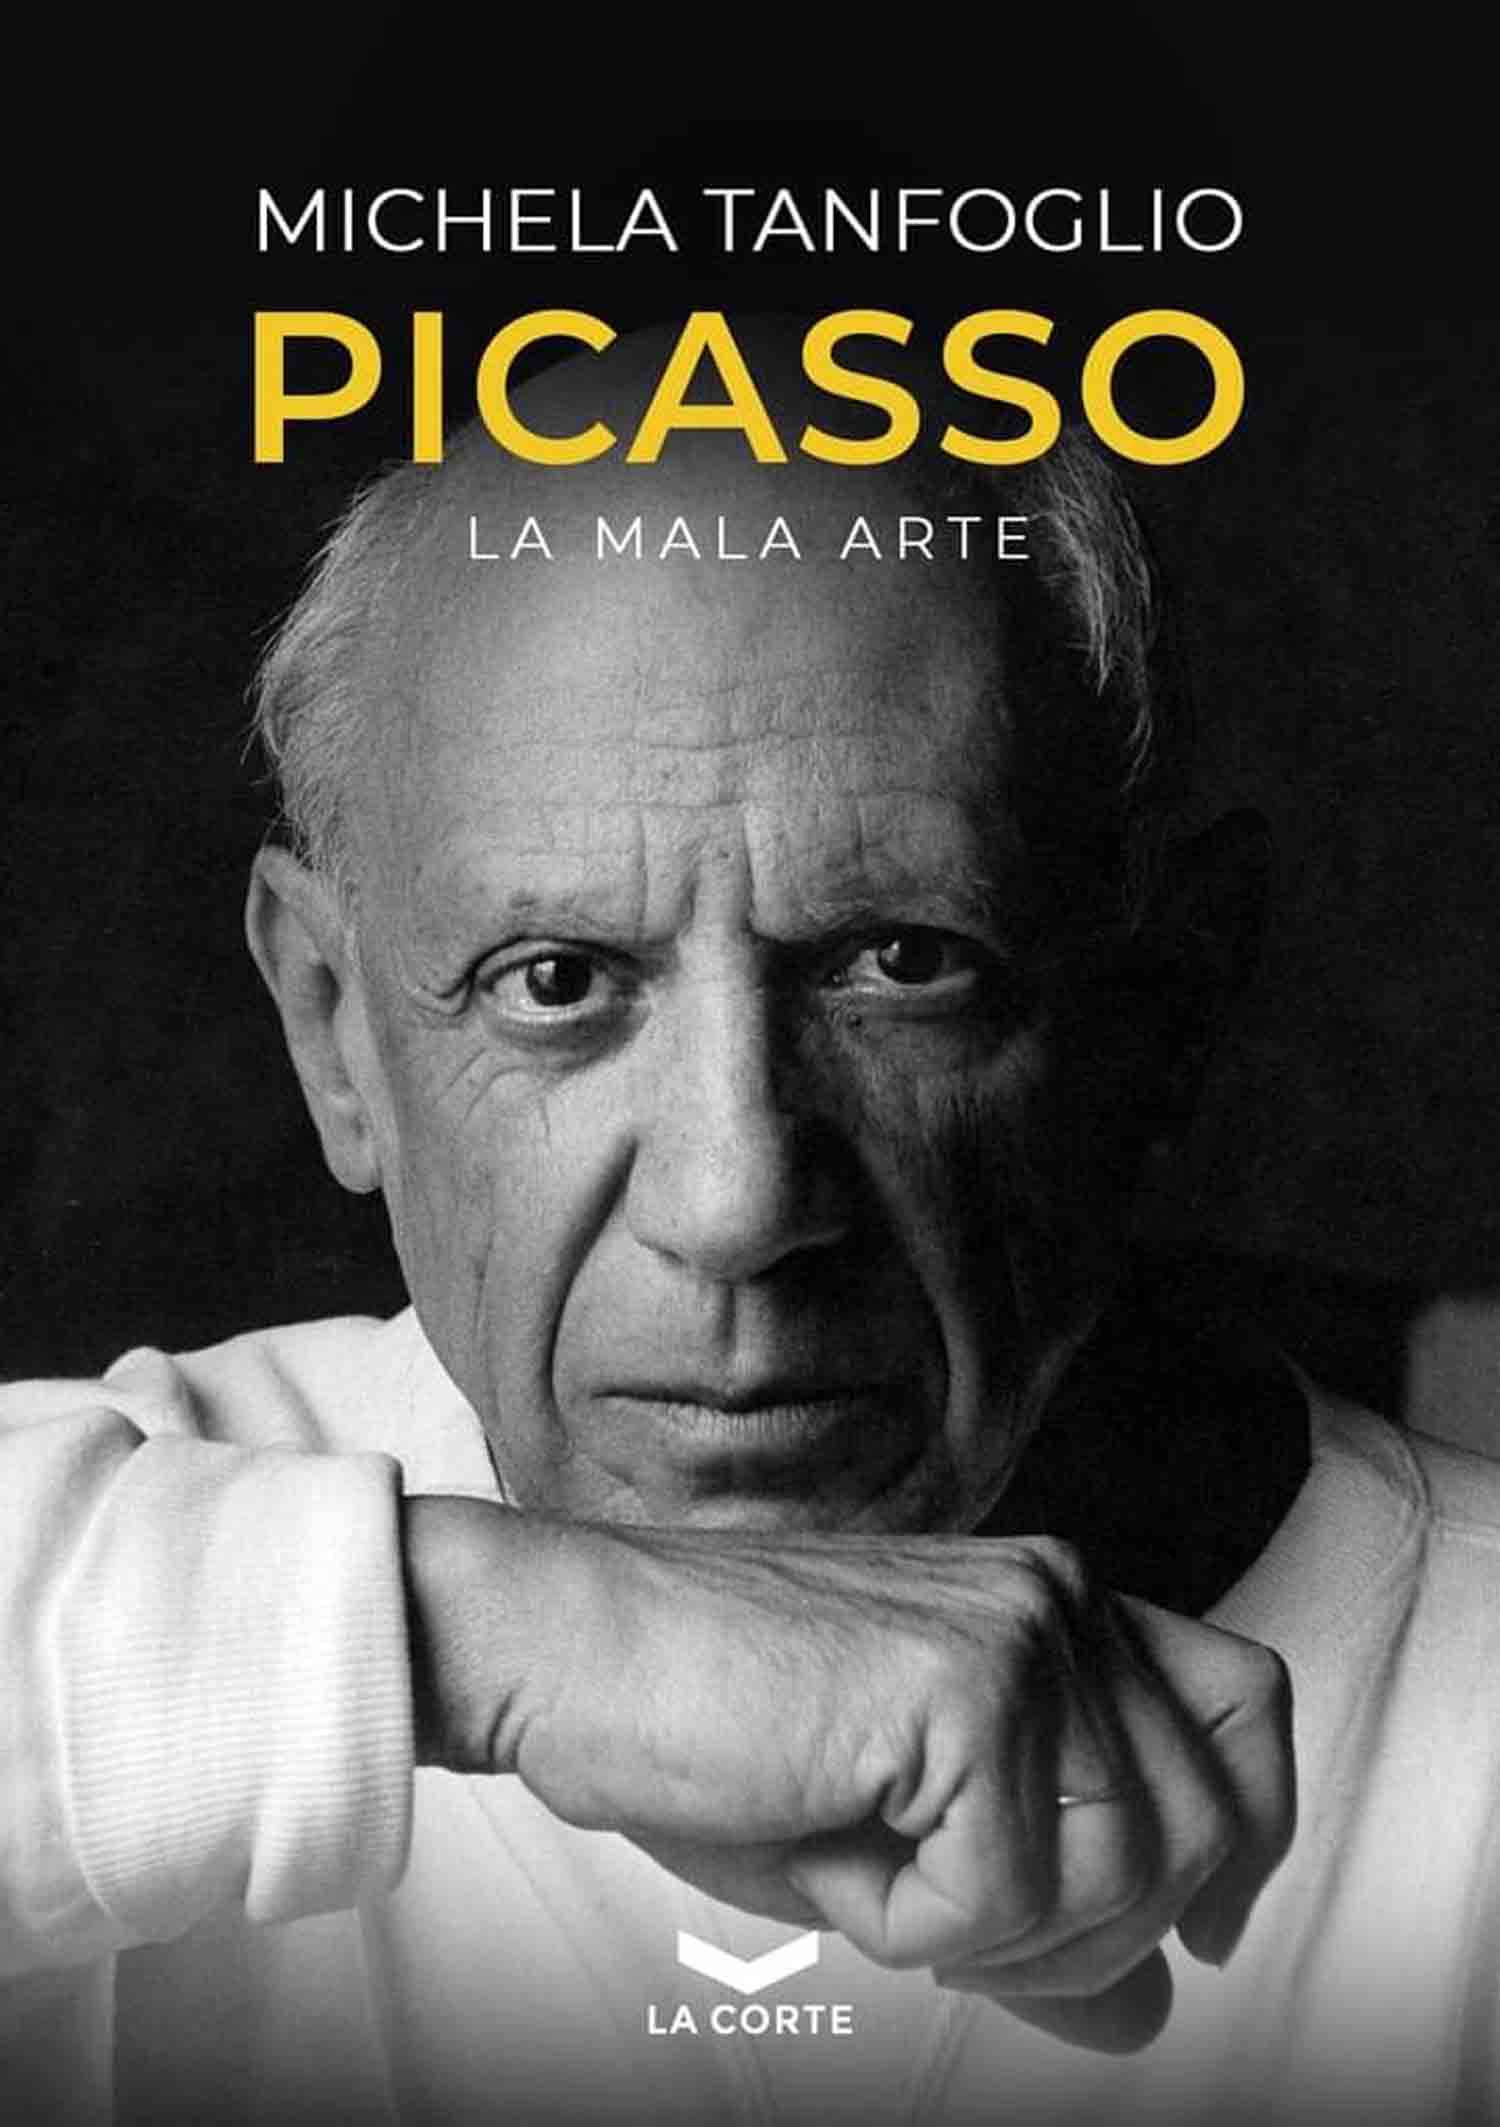 Copertina libro Picasso - La mala arte